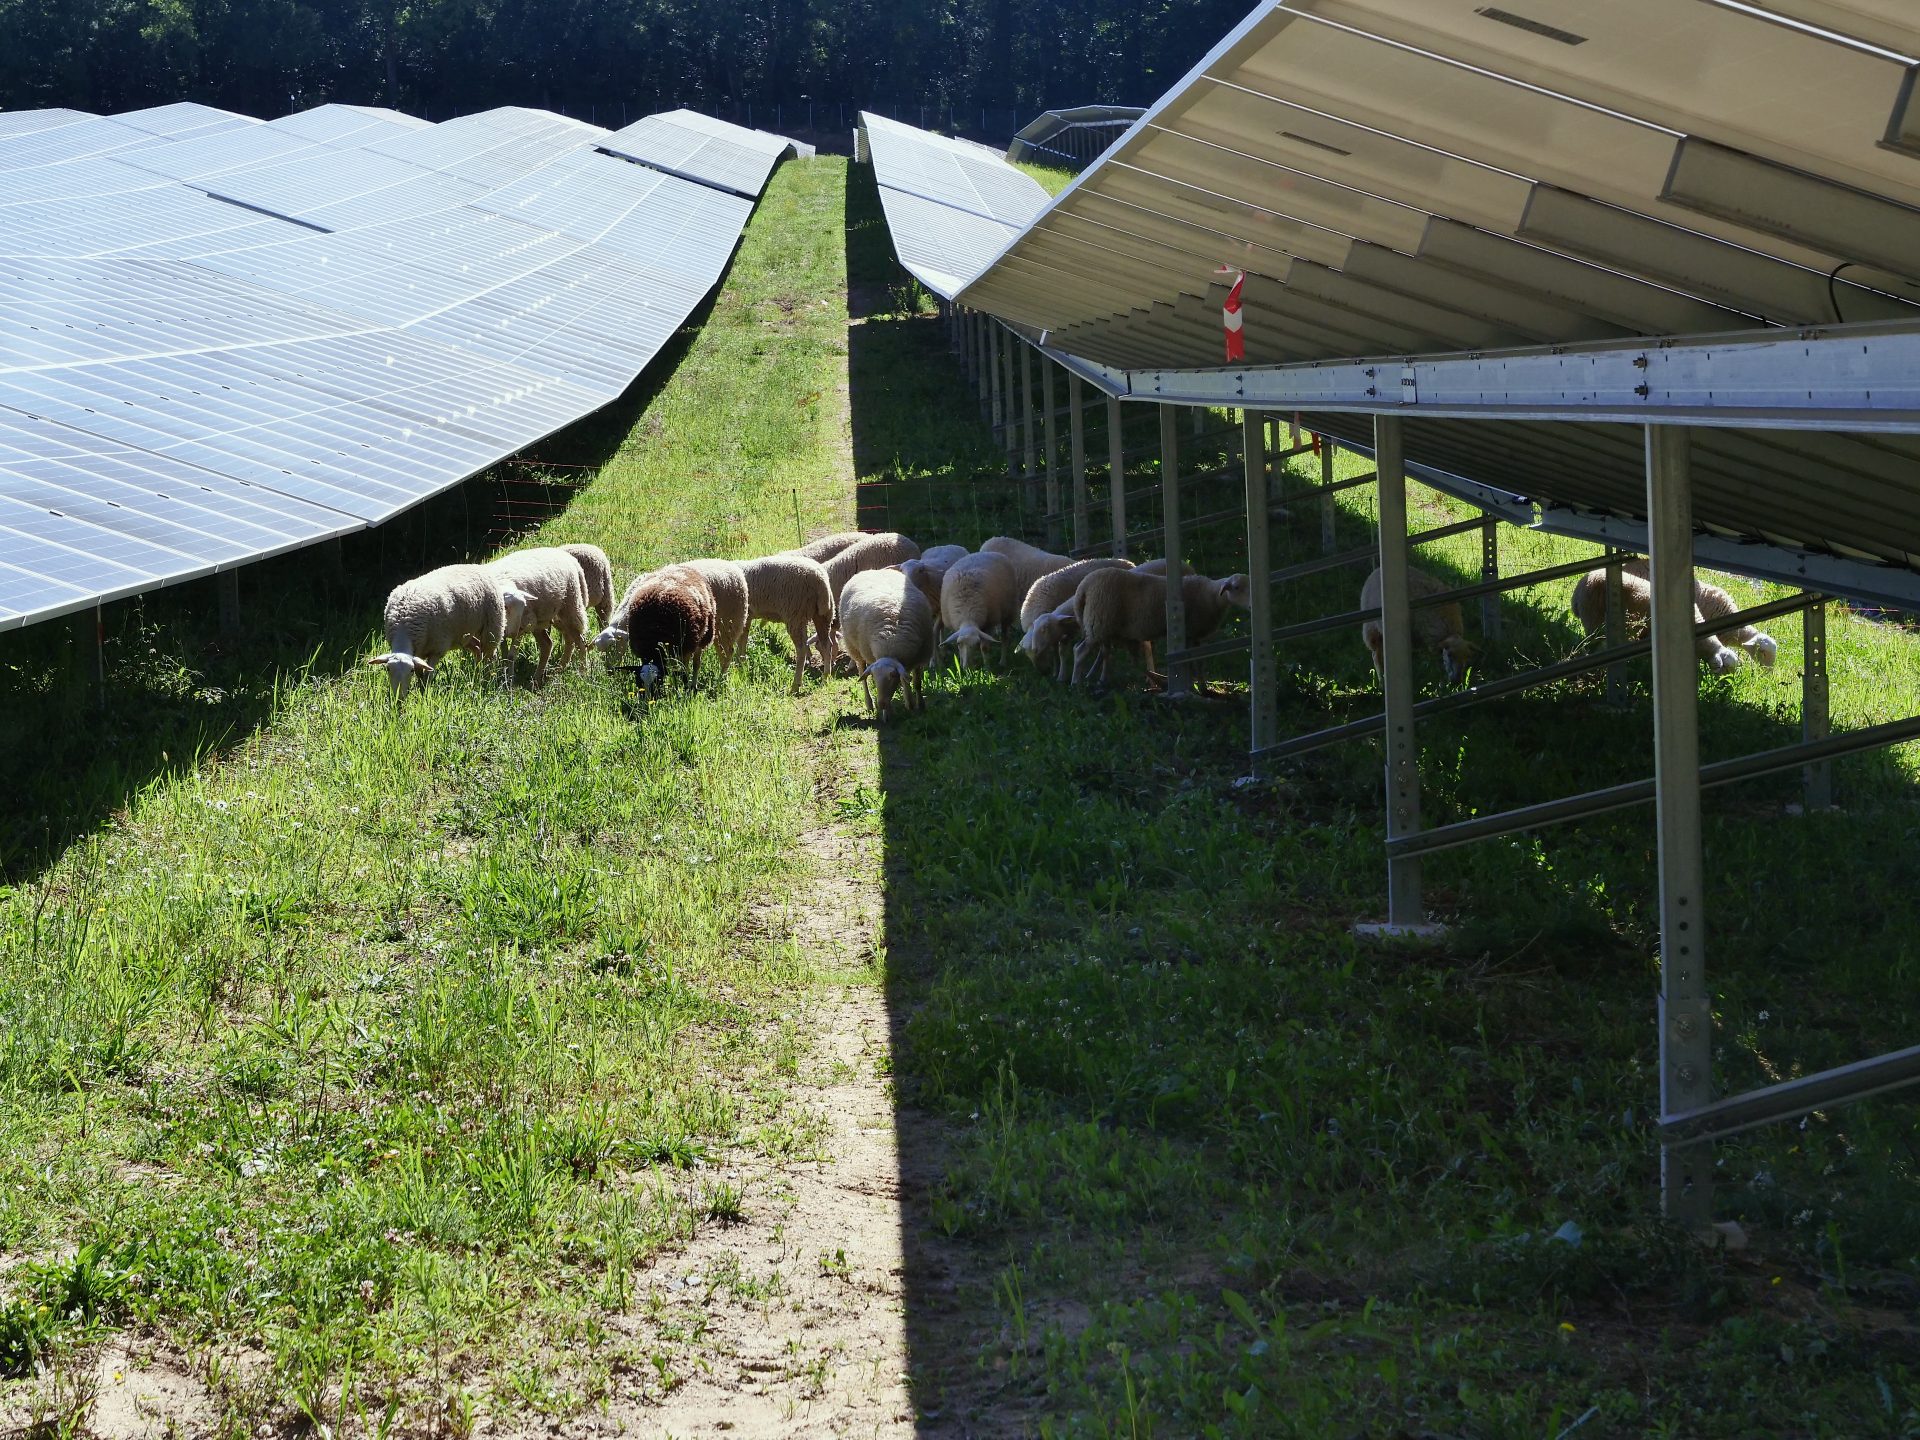 Parc agrivoltaïque sur élevage ovin.
